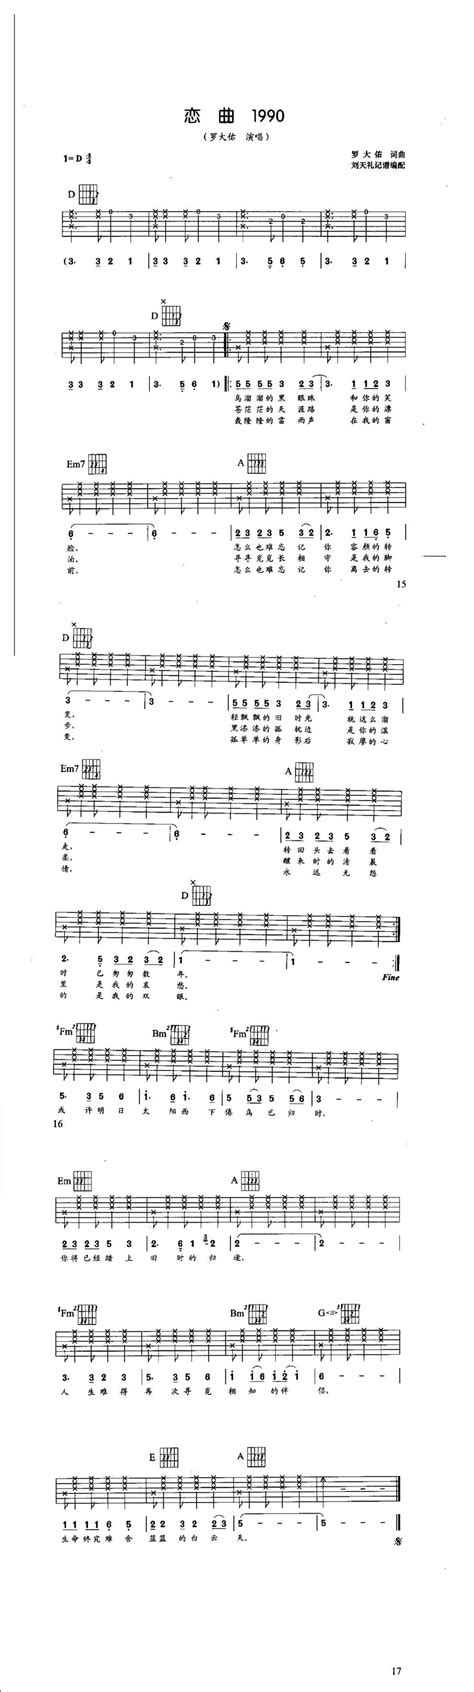 钢琴谱《恋曲1990》用简单数字版制谱 - 白痴弹法 - 单手双手钢琴谱 - 钢琴简谱